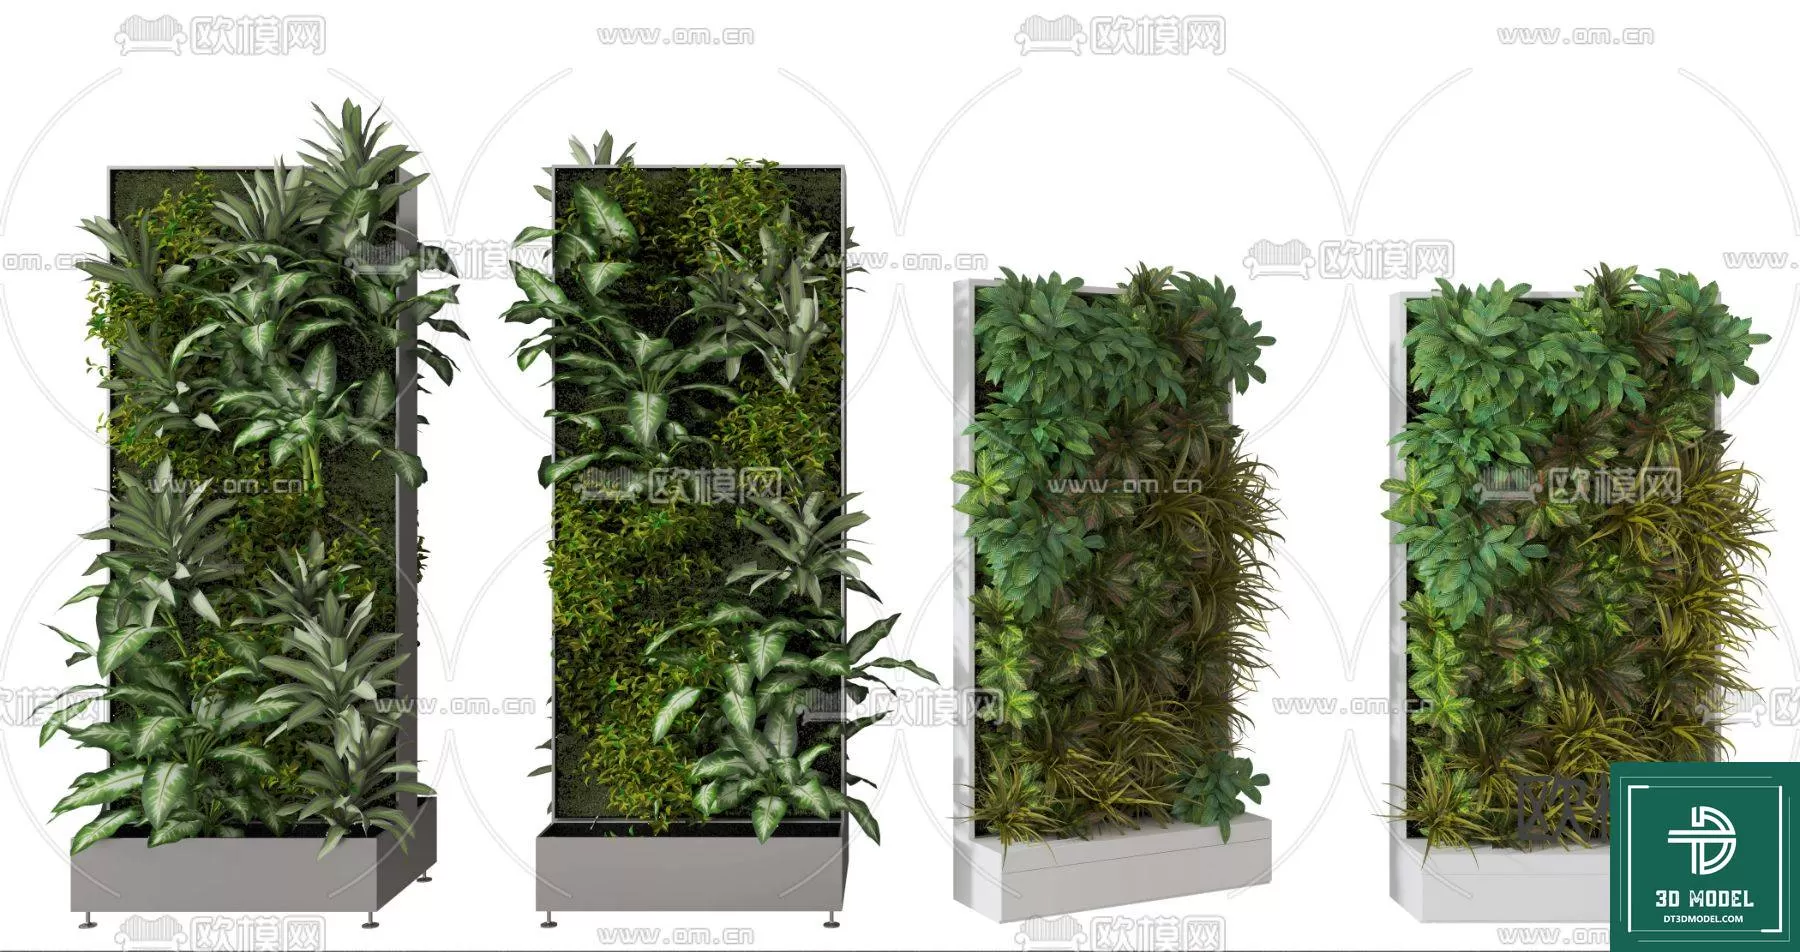 VERTICAL GARDEN – FITOWALL PLANT 3D MODEL – 079